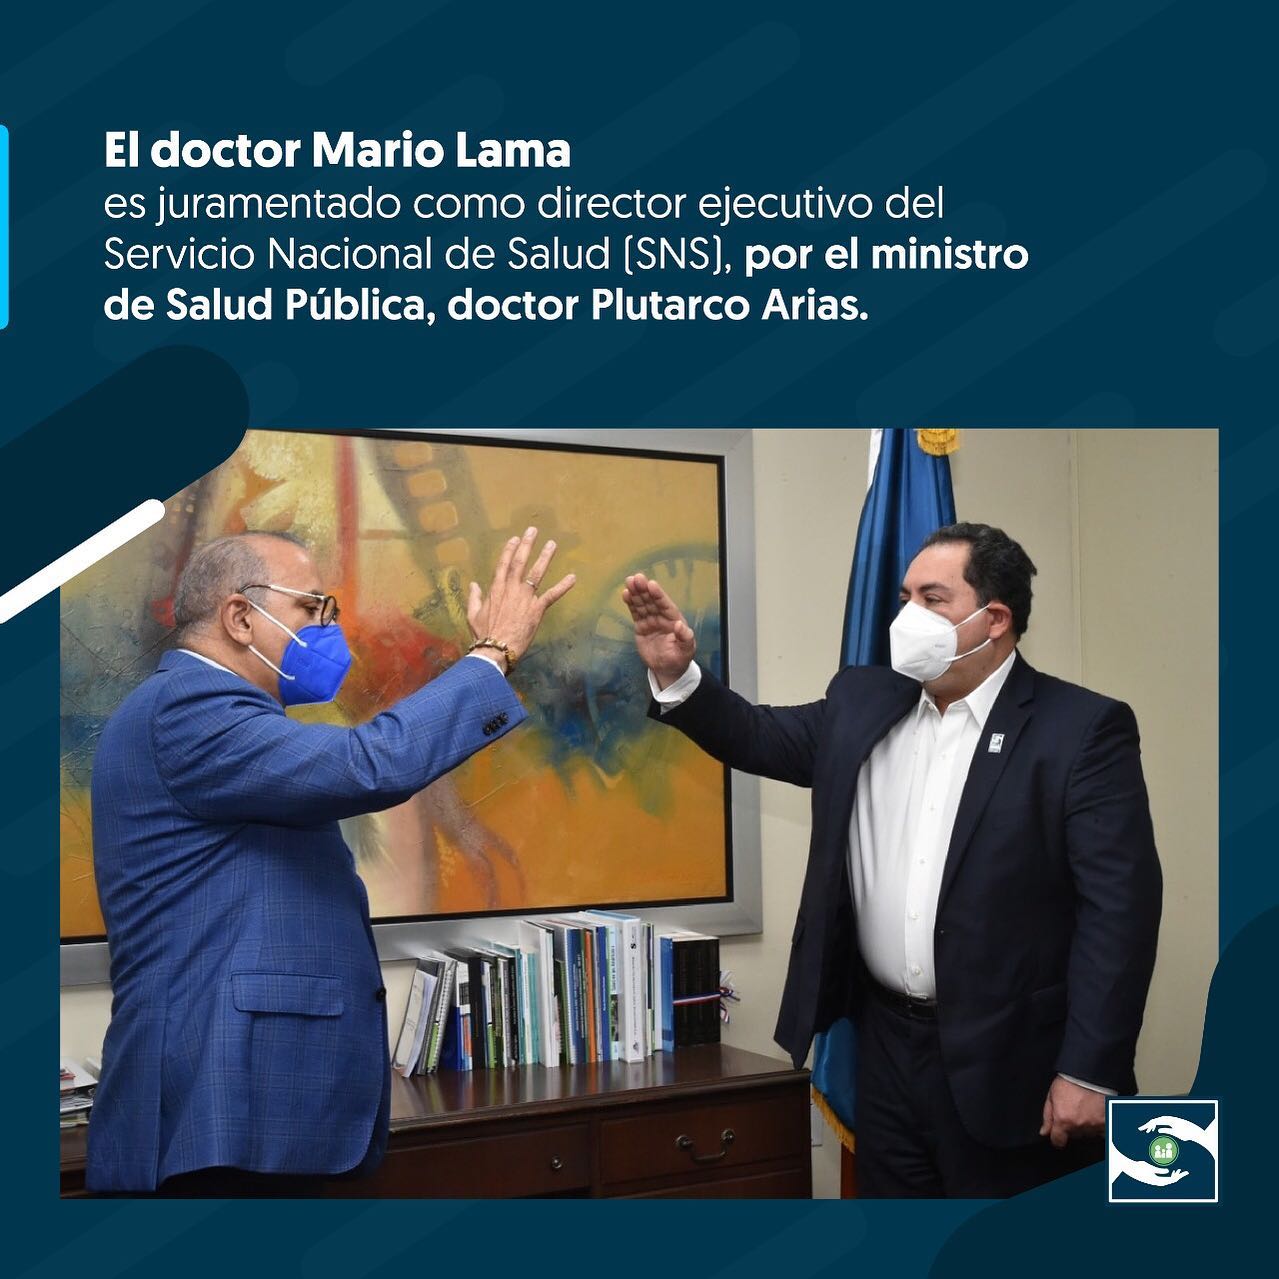 You are currently viewing El doctor Mario Lama es juramentado como director ejecutivo del Servicio Nacional de Salud (SNS), por el ministro de Salud Pública, doctor Plutarco Arias, de acuerdo a lo establecido en el artículo 10 de la Ley 123-15.